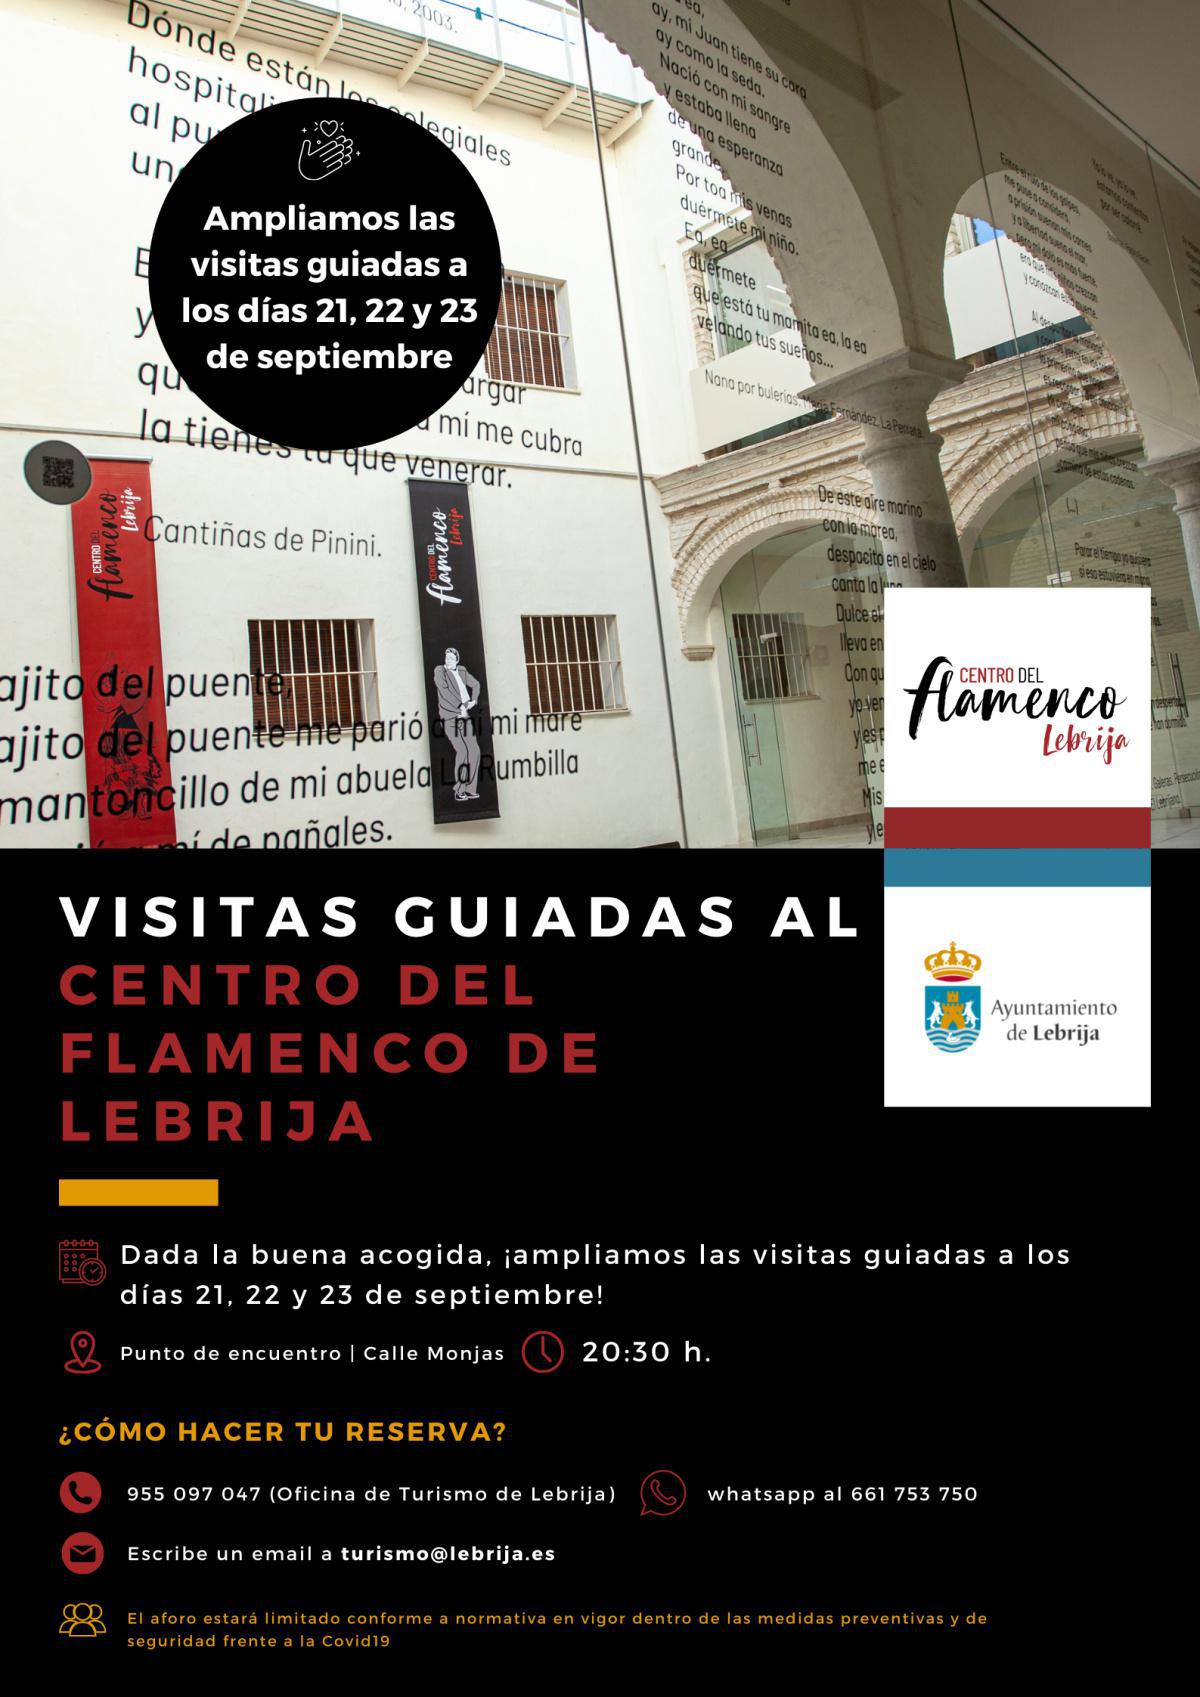 Visitas guiadas al Centro del Flamenco también los días 21, 22 y 23 de septiembre